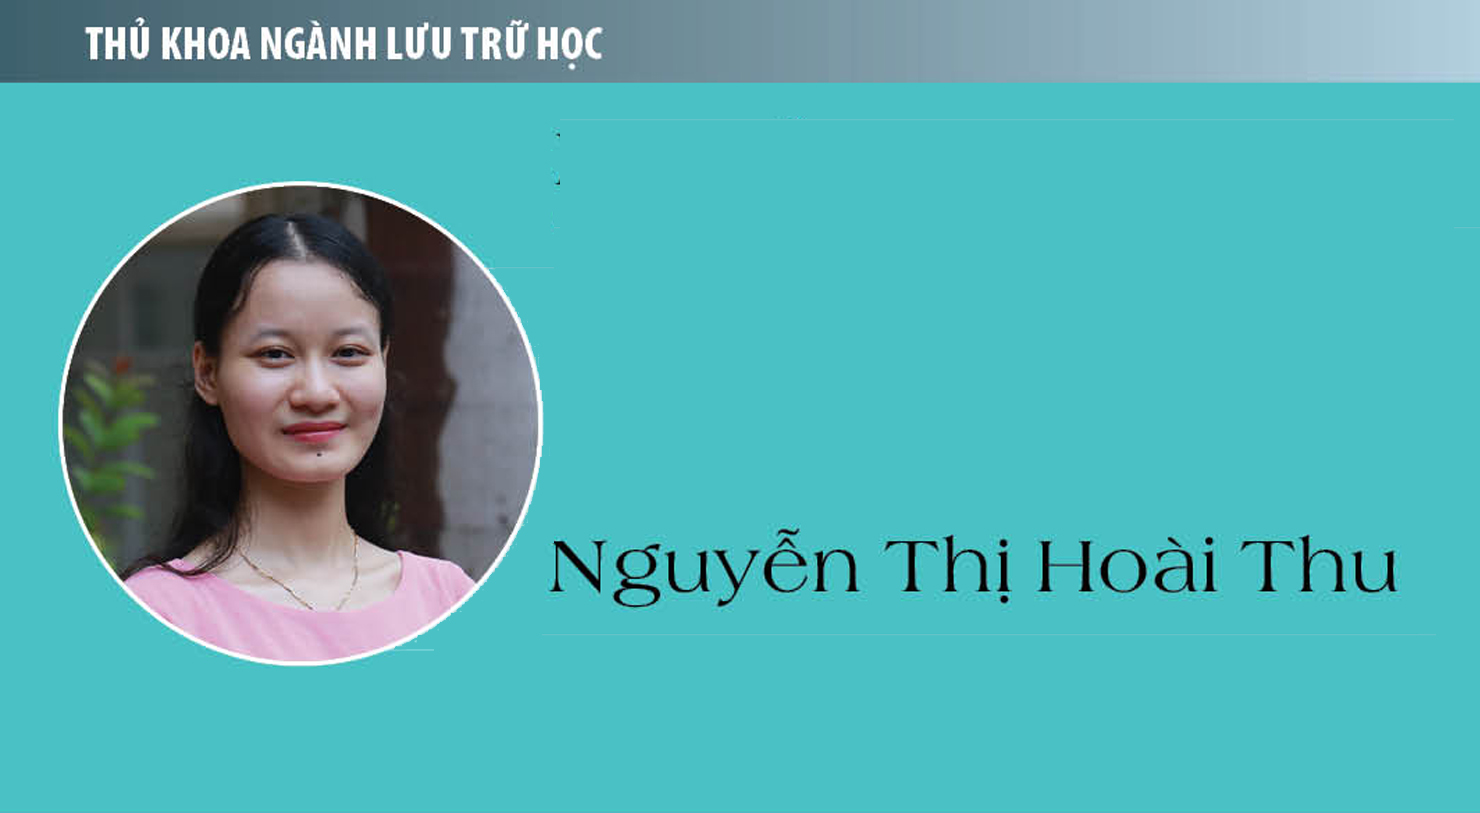 Thủ khoa Nguyễn Thị Hoài Thu (ngành Lưu trữ học): Nếu thời gian trở lại...